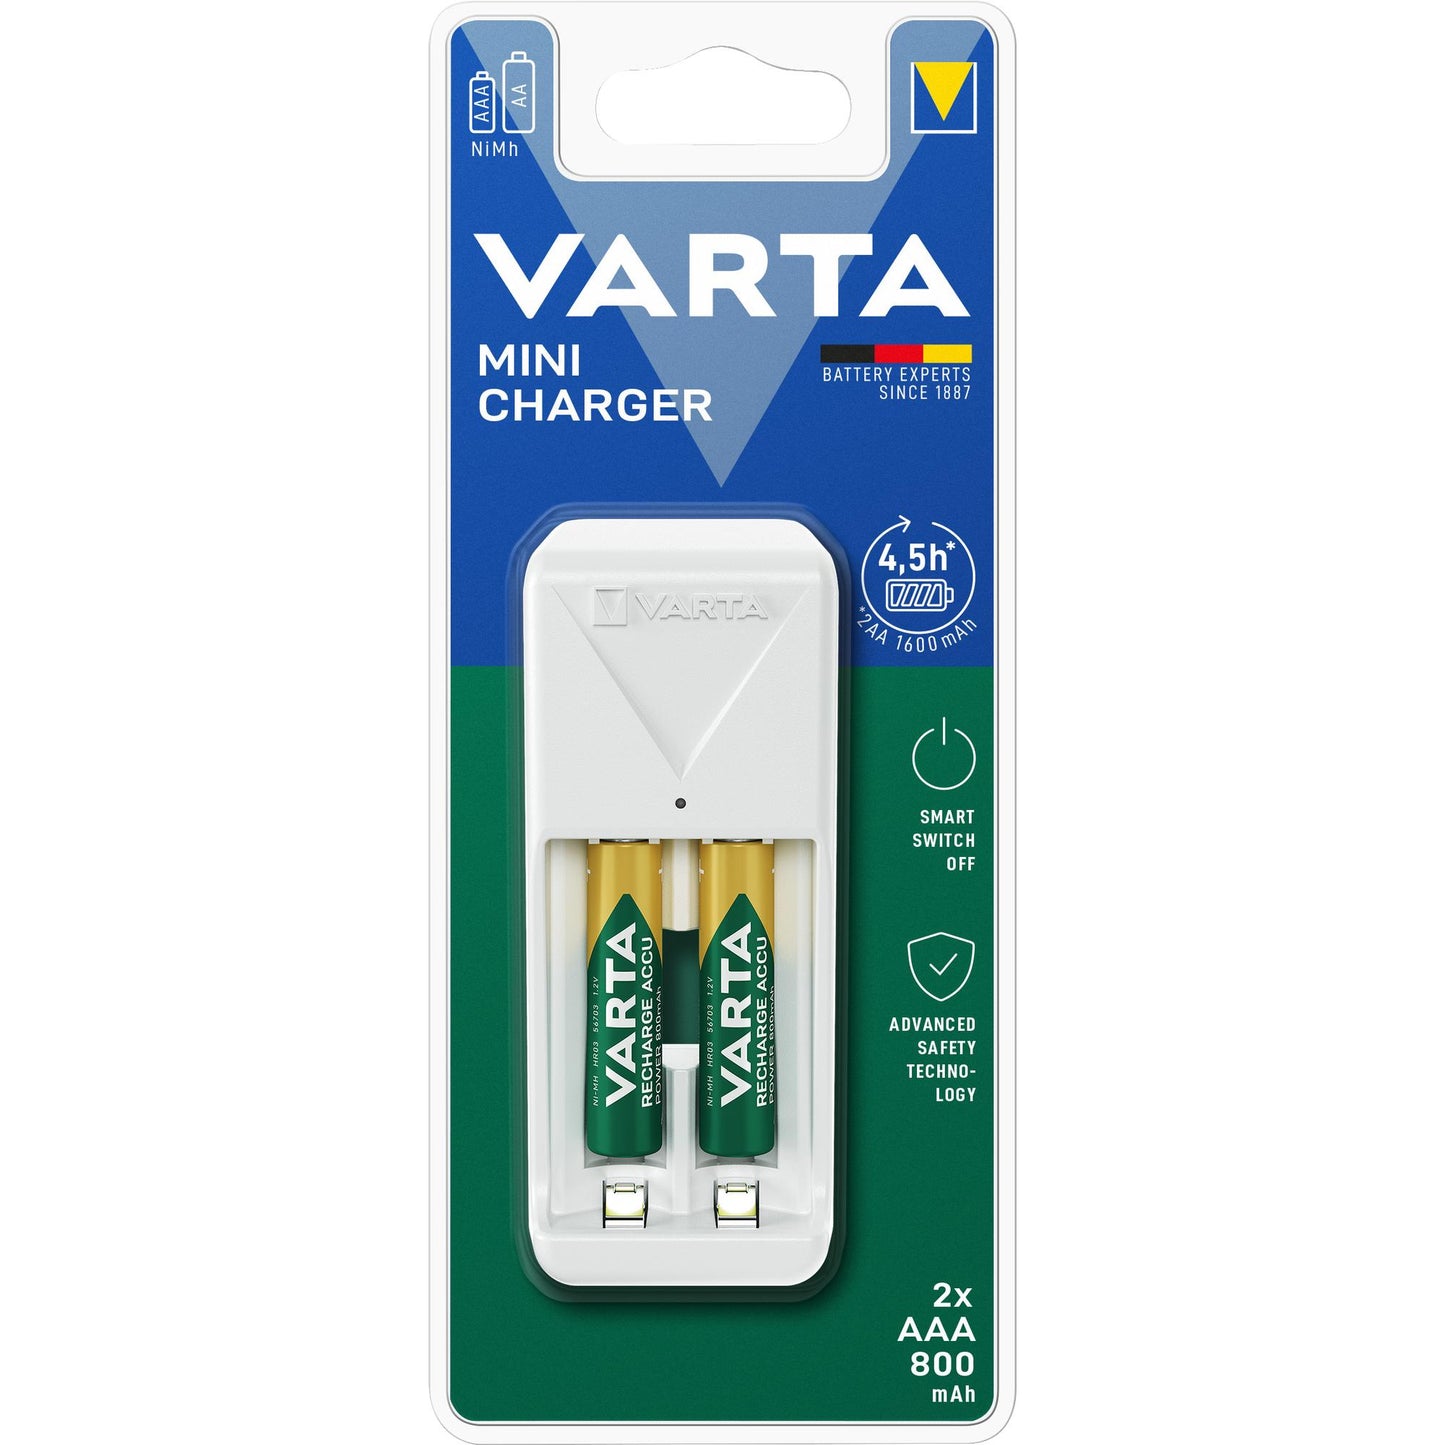 VARTA Universal Ladegerät Mini Charger inkl. 2x AAA Micro Akkus, 800mAh, Retail